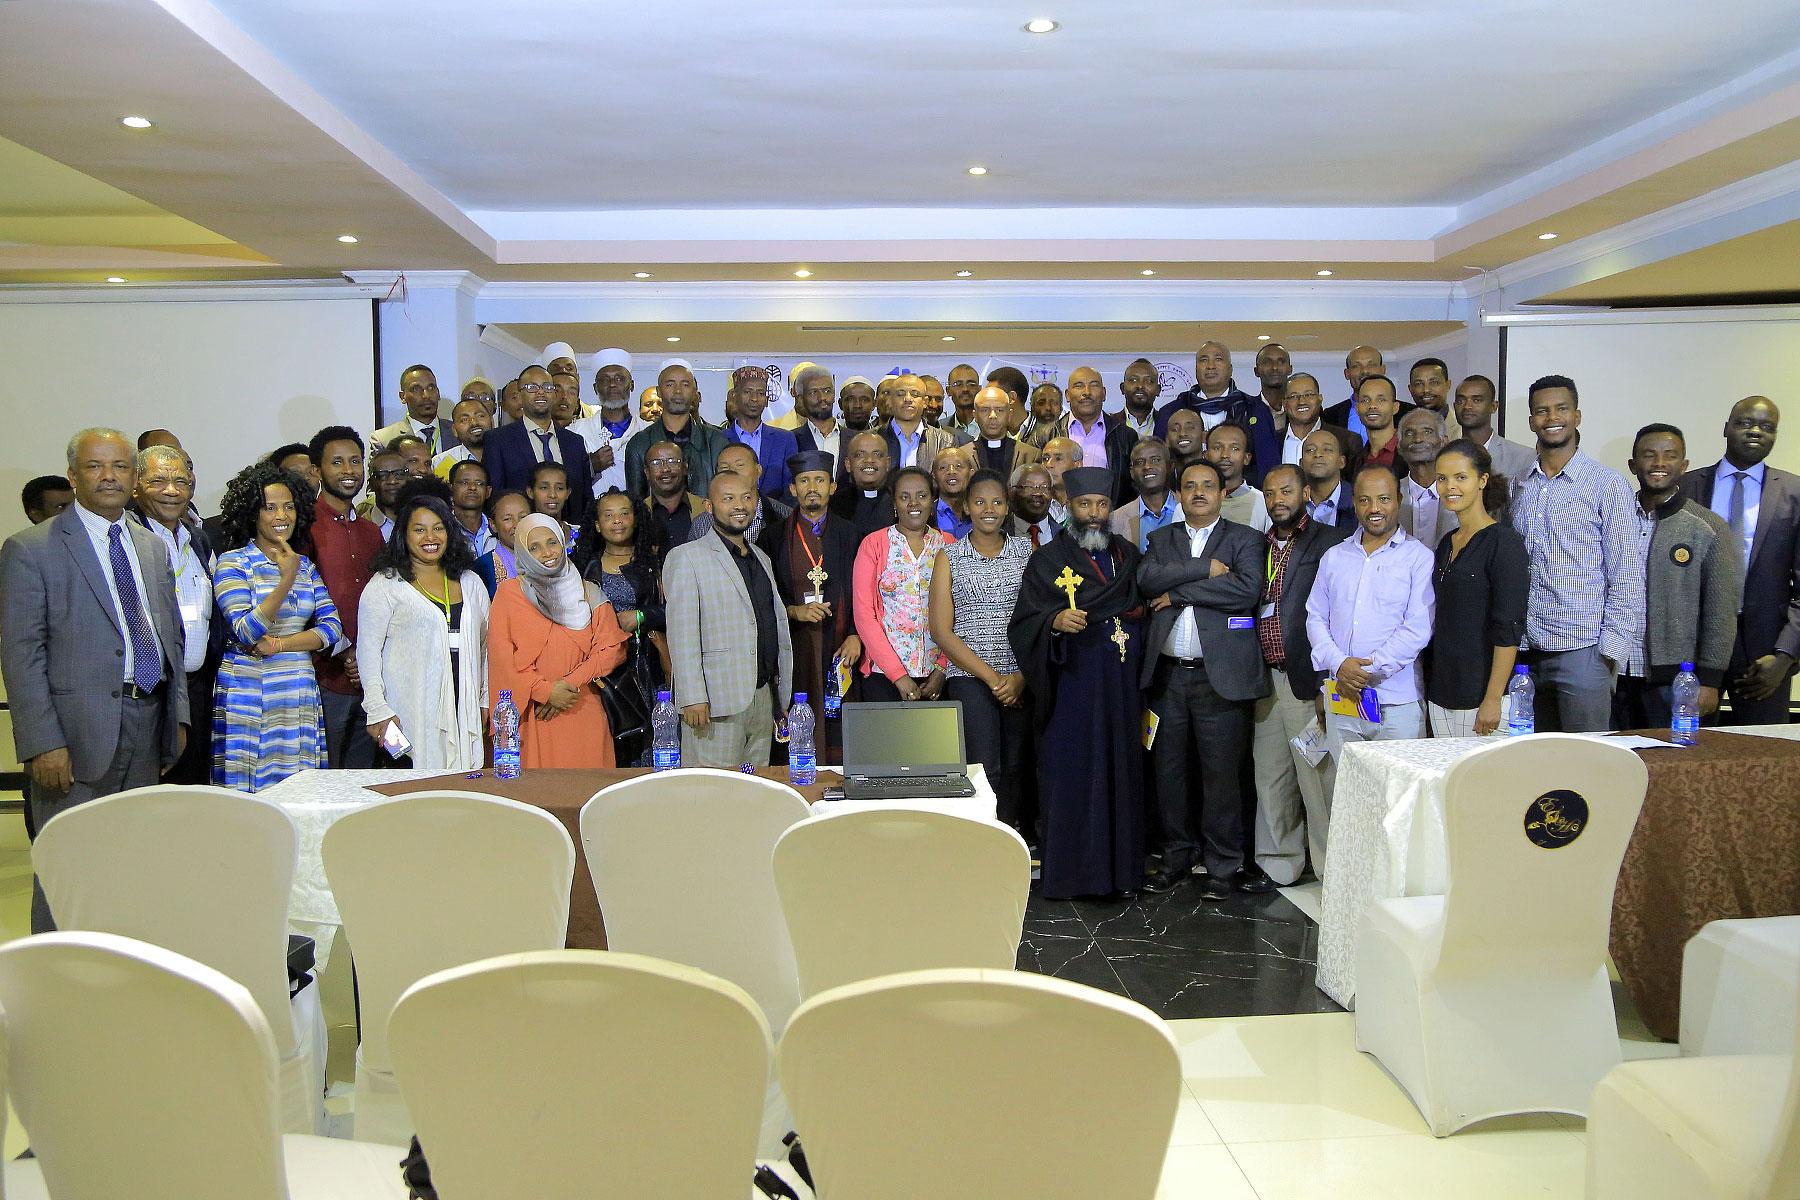 Teilnehmende des Multiplikatoren-und-Multiplikatorinnen-Trainings, das im Oktober 2018 in der äthiopischen Hauptstadt Addis Abeba stattfand. Foto: ÄEKMY